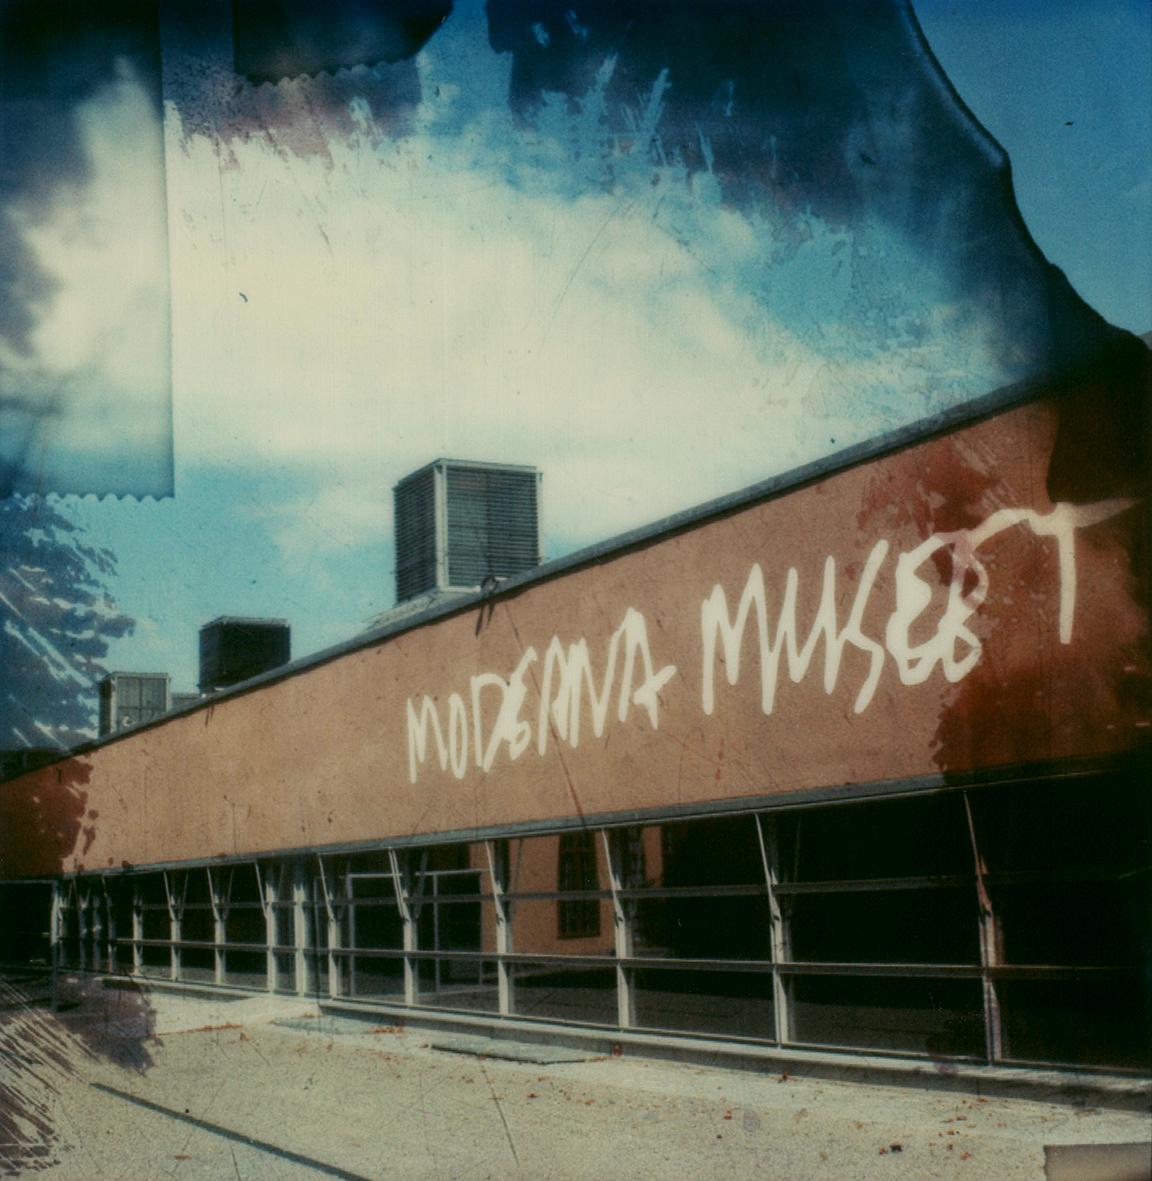 Stockholm, Moderna Museet #17 [Begesehen, gemacht] - Polaroid, Farbe